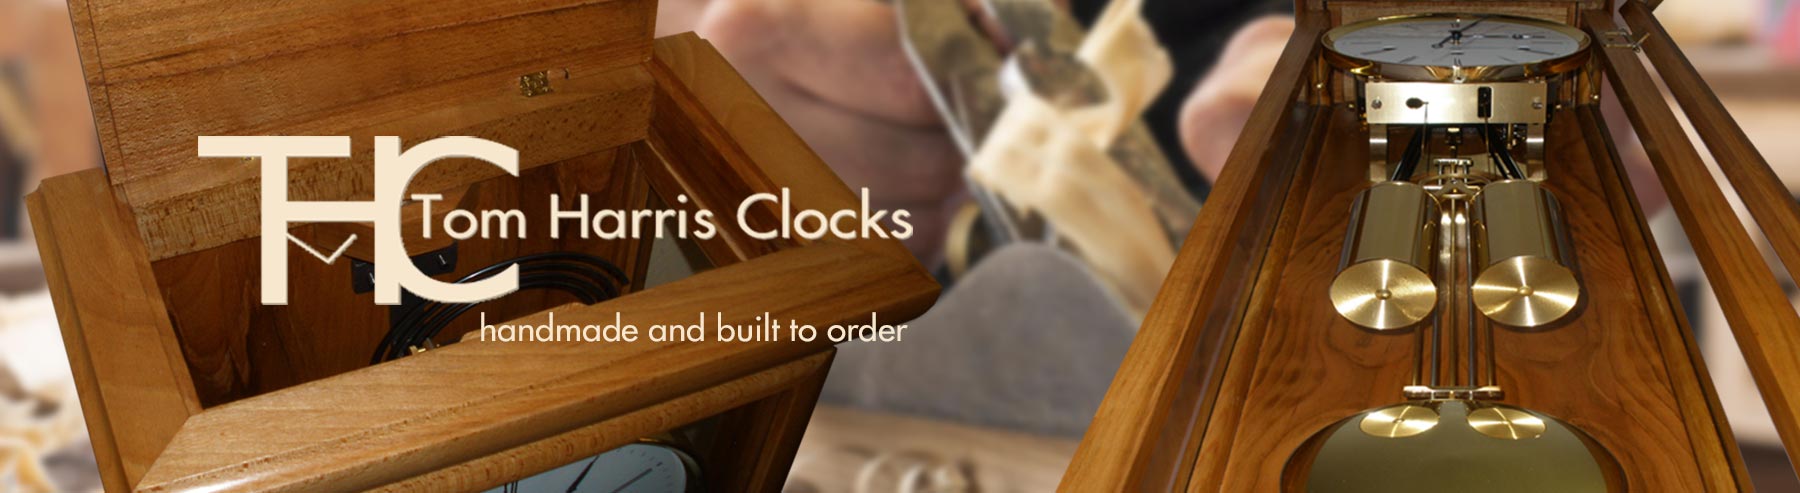 THC-Tom-Harris-Clocks